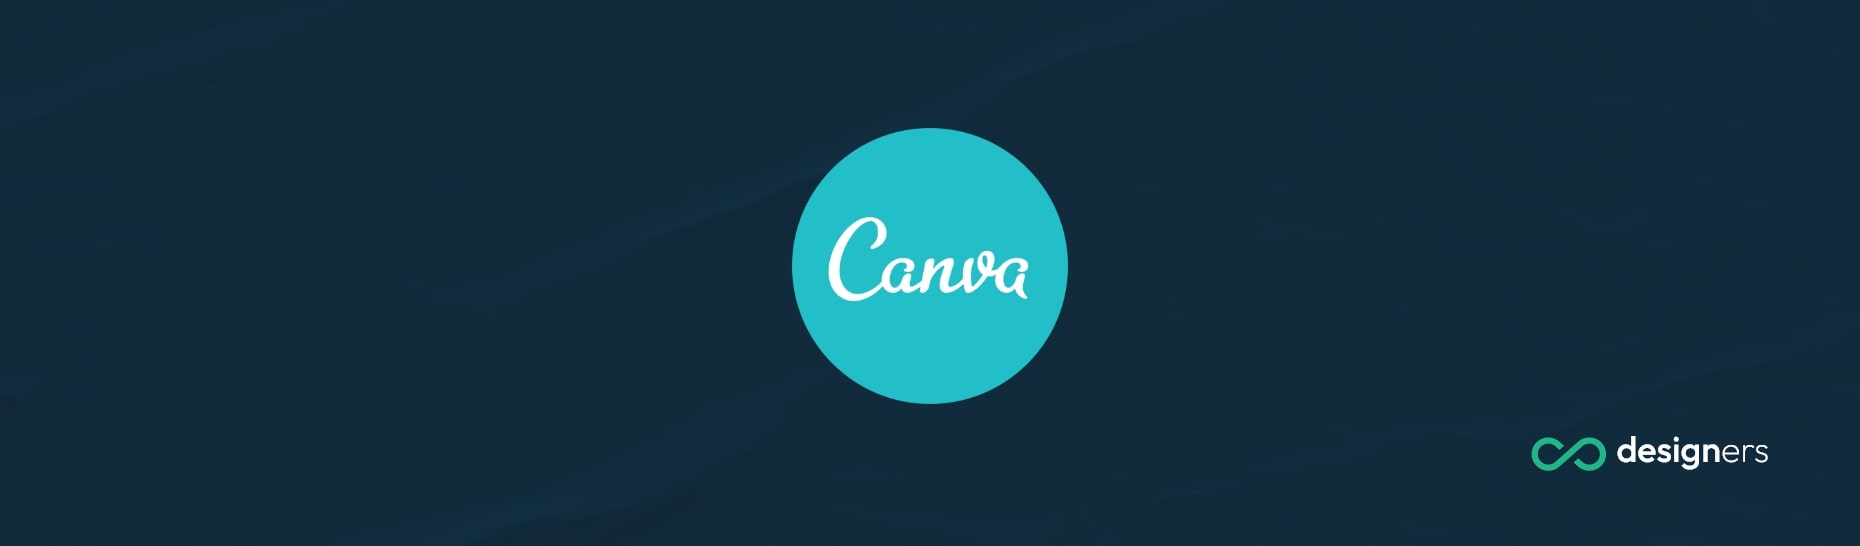 How Do I Save a Canva File as a JPEG?